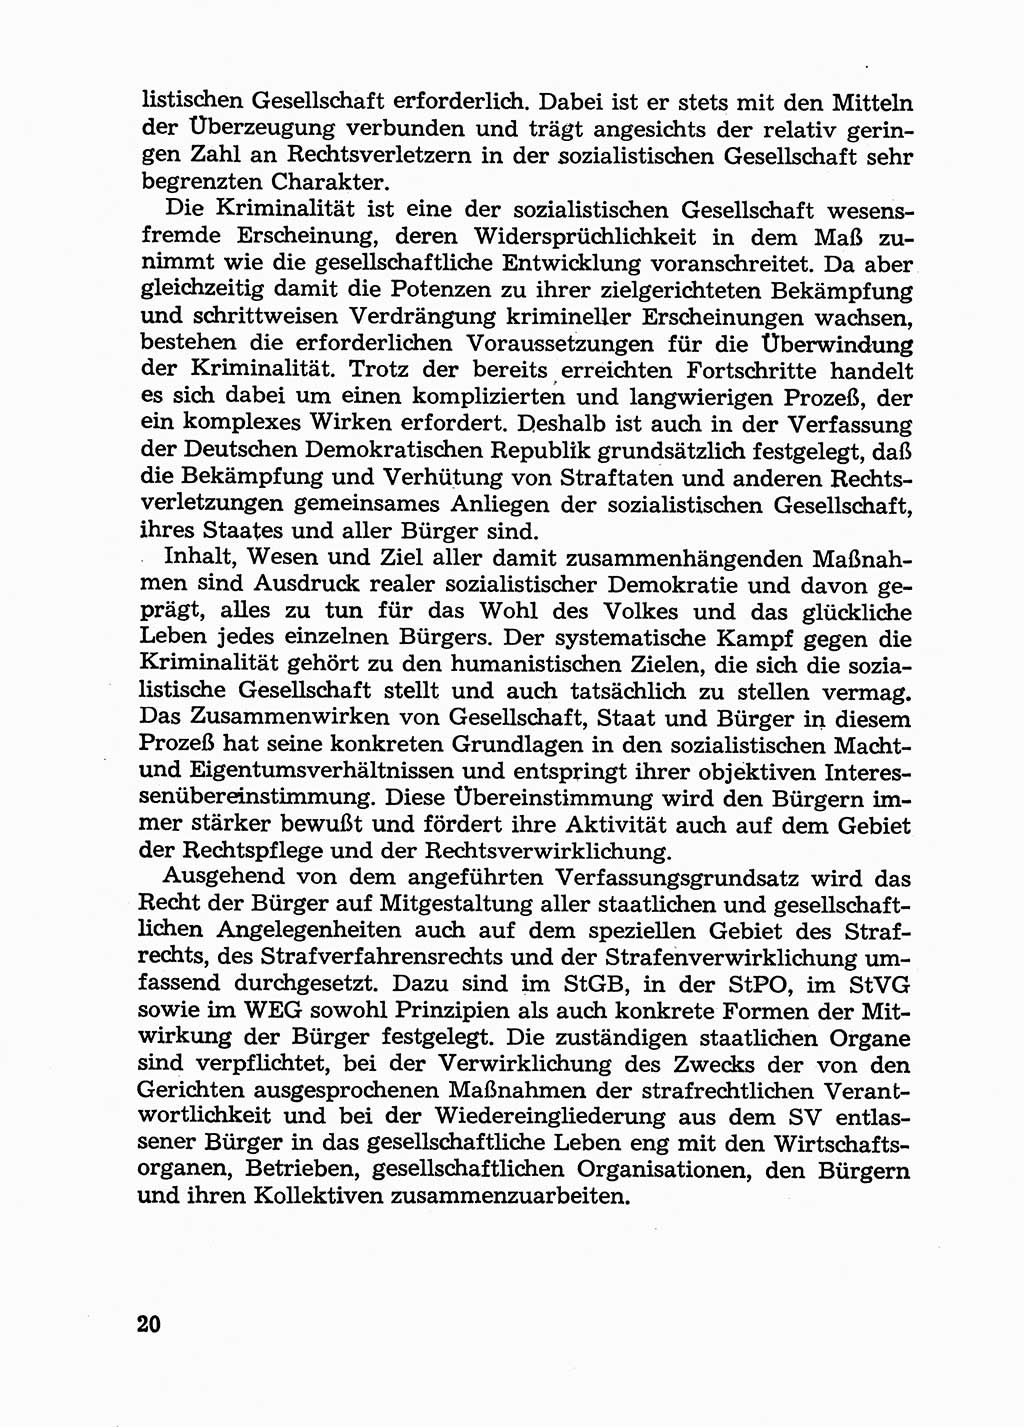 Handbuch für Betriebsangehörige, Abteilung Strafvollzug (SV) [Ministerium des Innern (MdI) Deutsche Demokratische Republik (DDR)] 1981, Seite 20 (Hb. BA Abt. SV MdI DDR 1981, S. 20)